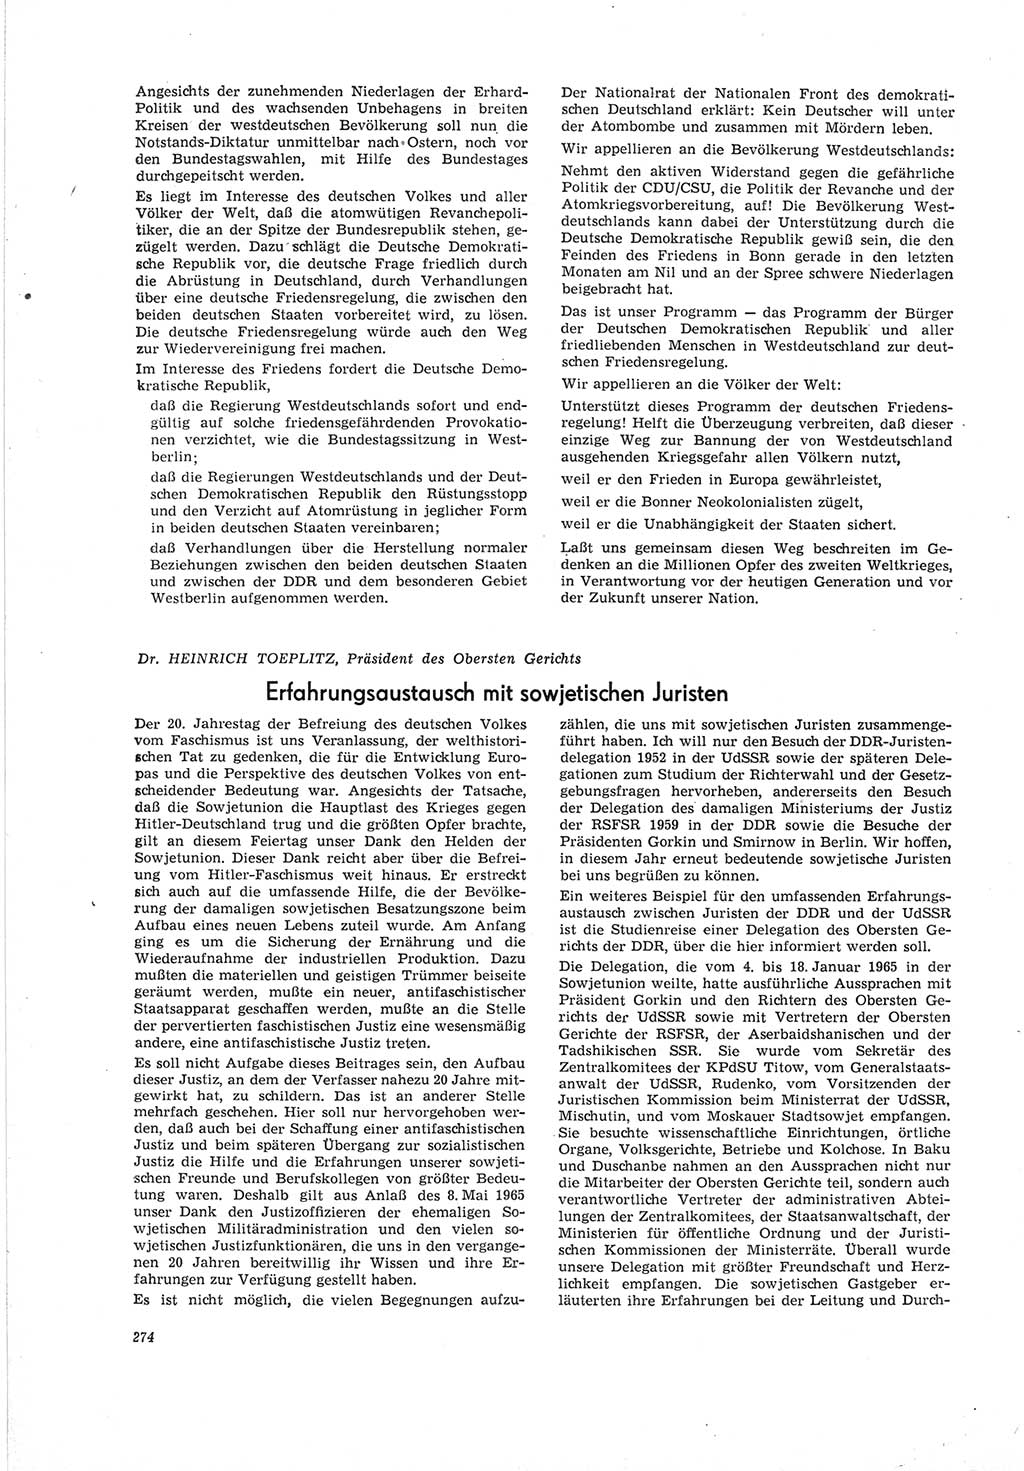 Neue Justiz (NJ), Zeitschrift für Recht und Rechtswissenschaft [Deutsche Demokratische Republik (DDR)], 19. Jahrgang 1965, Seite 274 (NJ DDR 1965, S. 274)